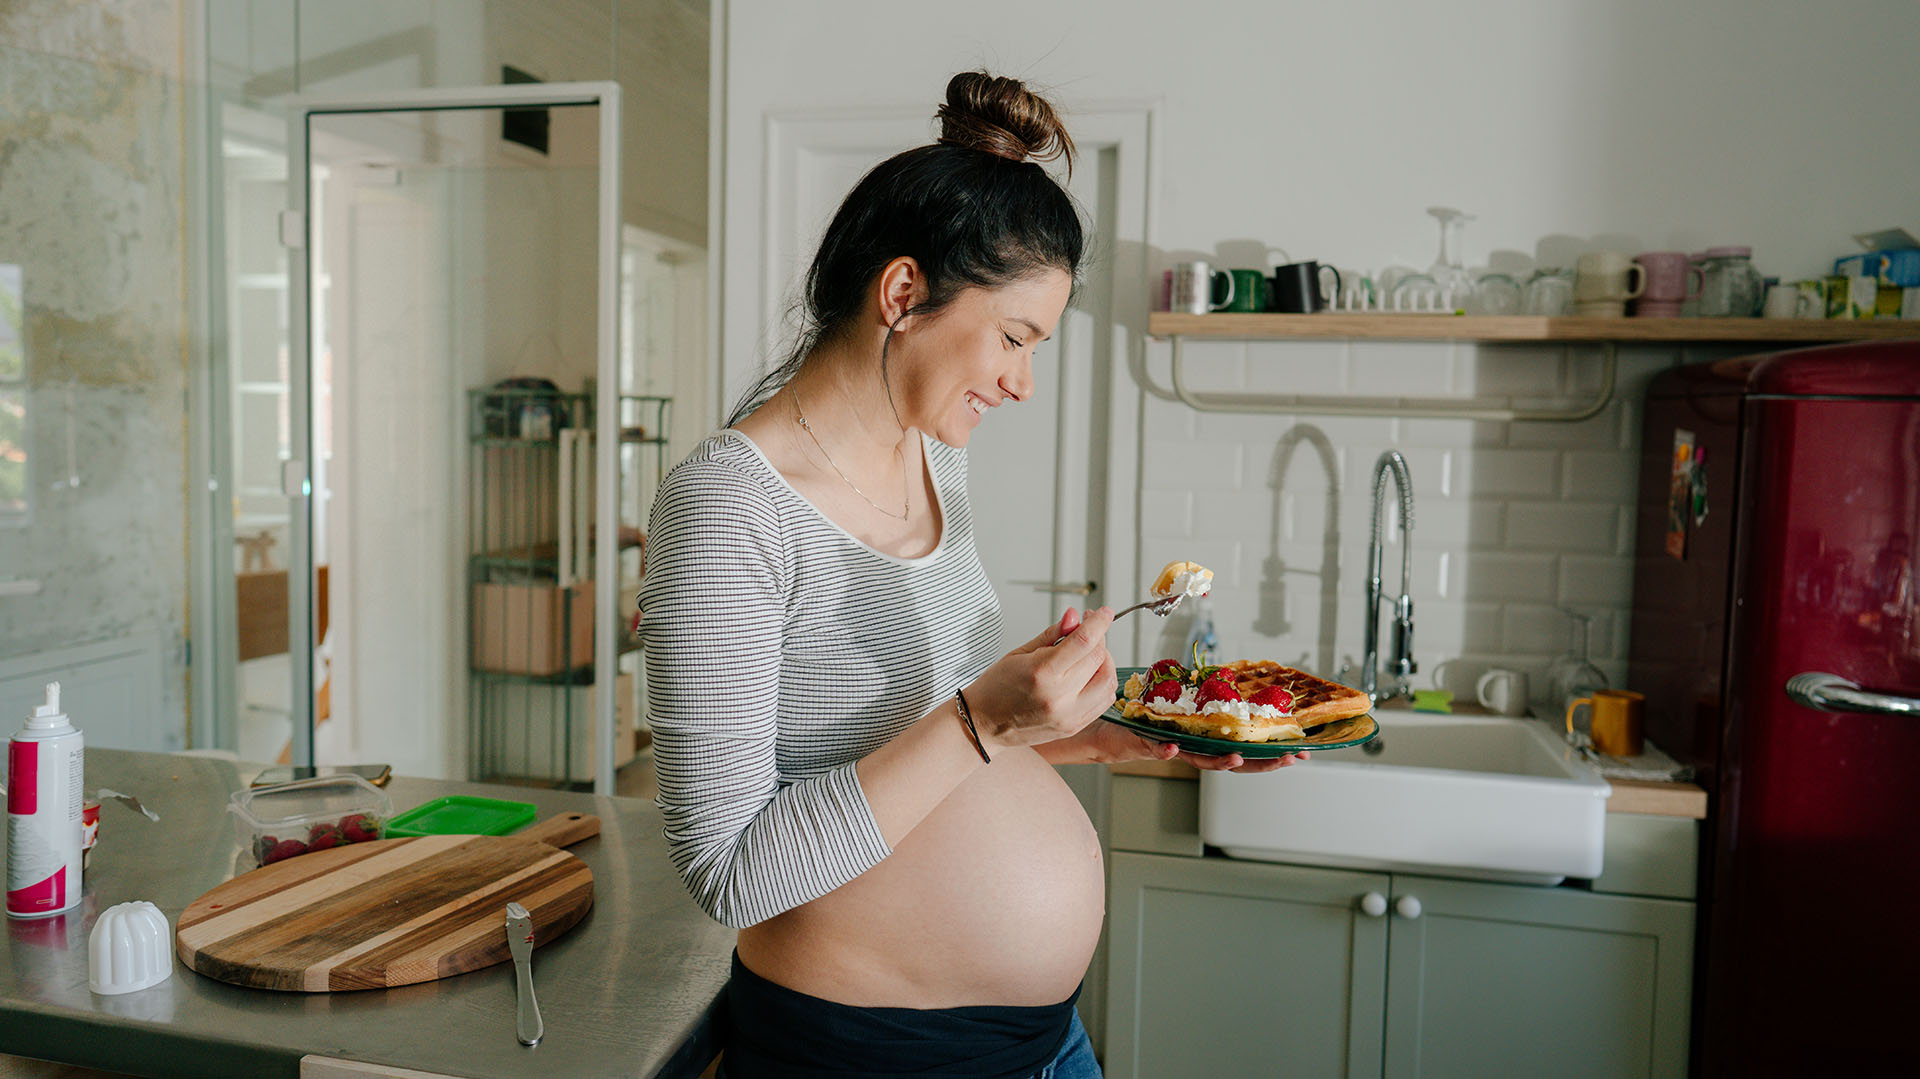 Seguir la dieta mediterránea antes del embarazo reduce el riesgo de presión alta y diabetes 